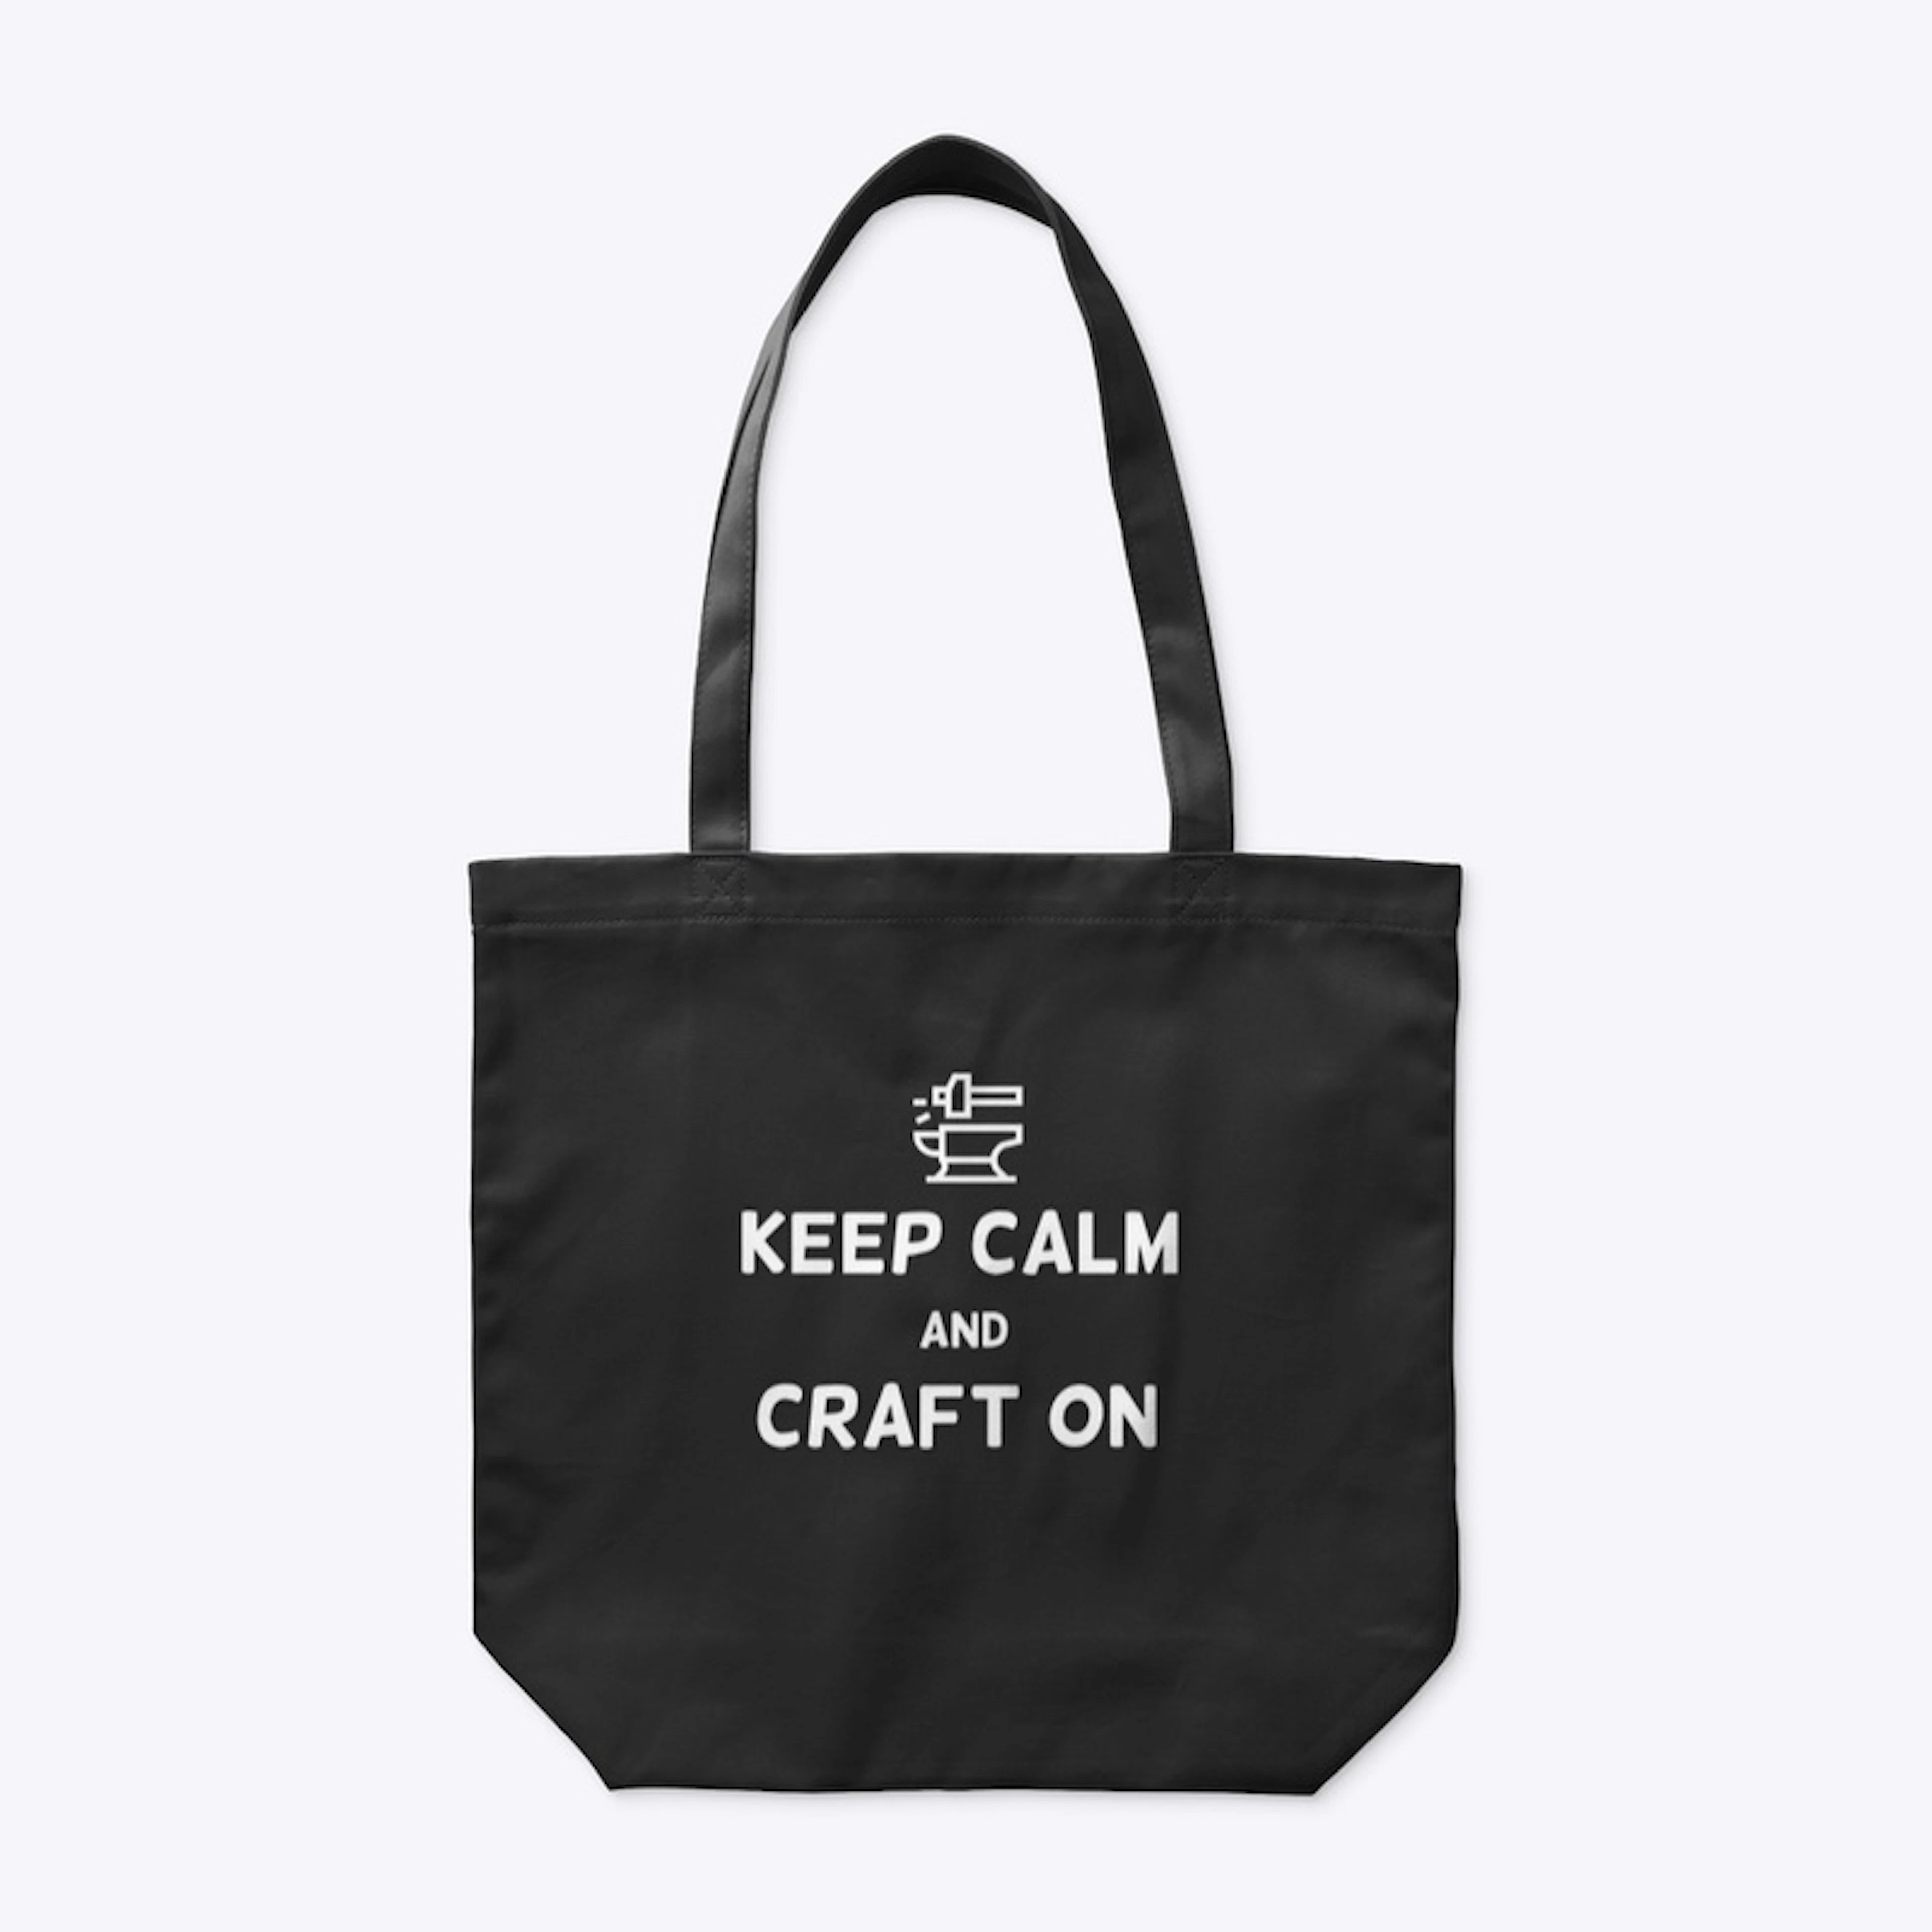 Keep Calm and Craft On bag